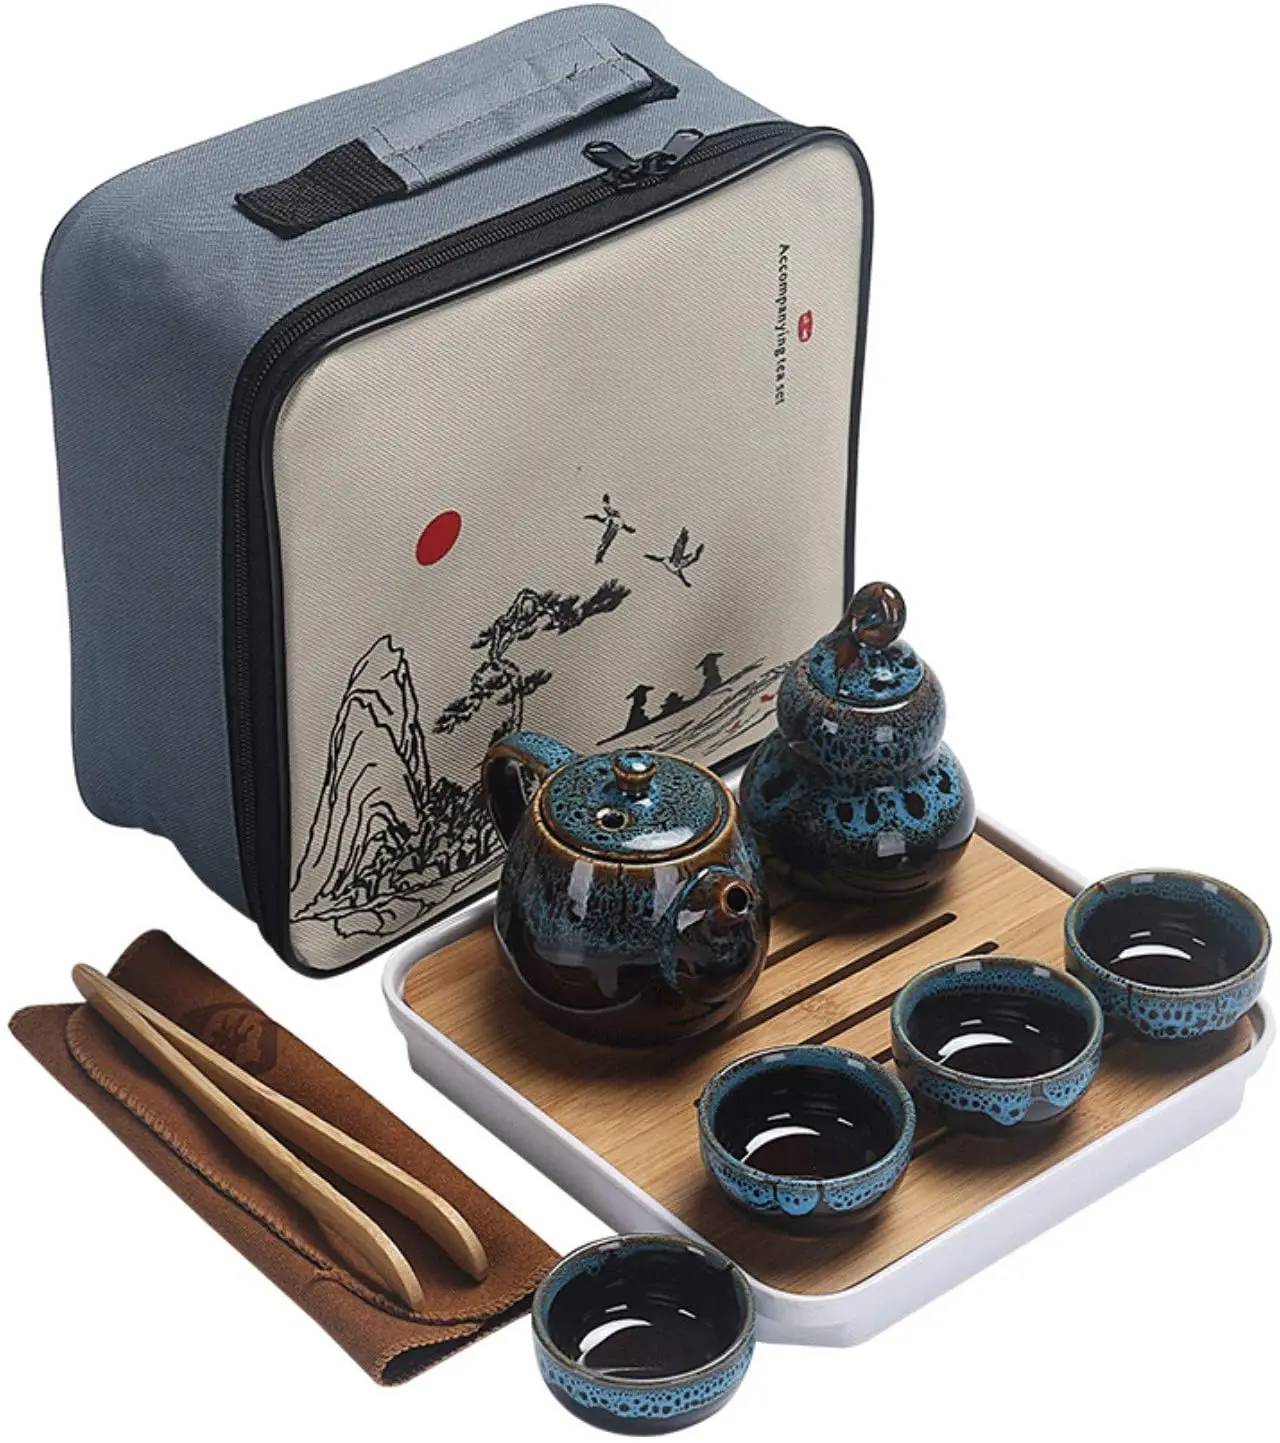 

Чайный набор Kungfu, портативный дорожный чайный набор с чайником, чайными чашками, чайной канистрой, чайным подносом и подарочным пакетиком д...